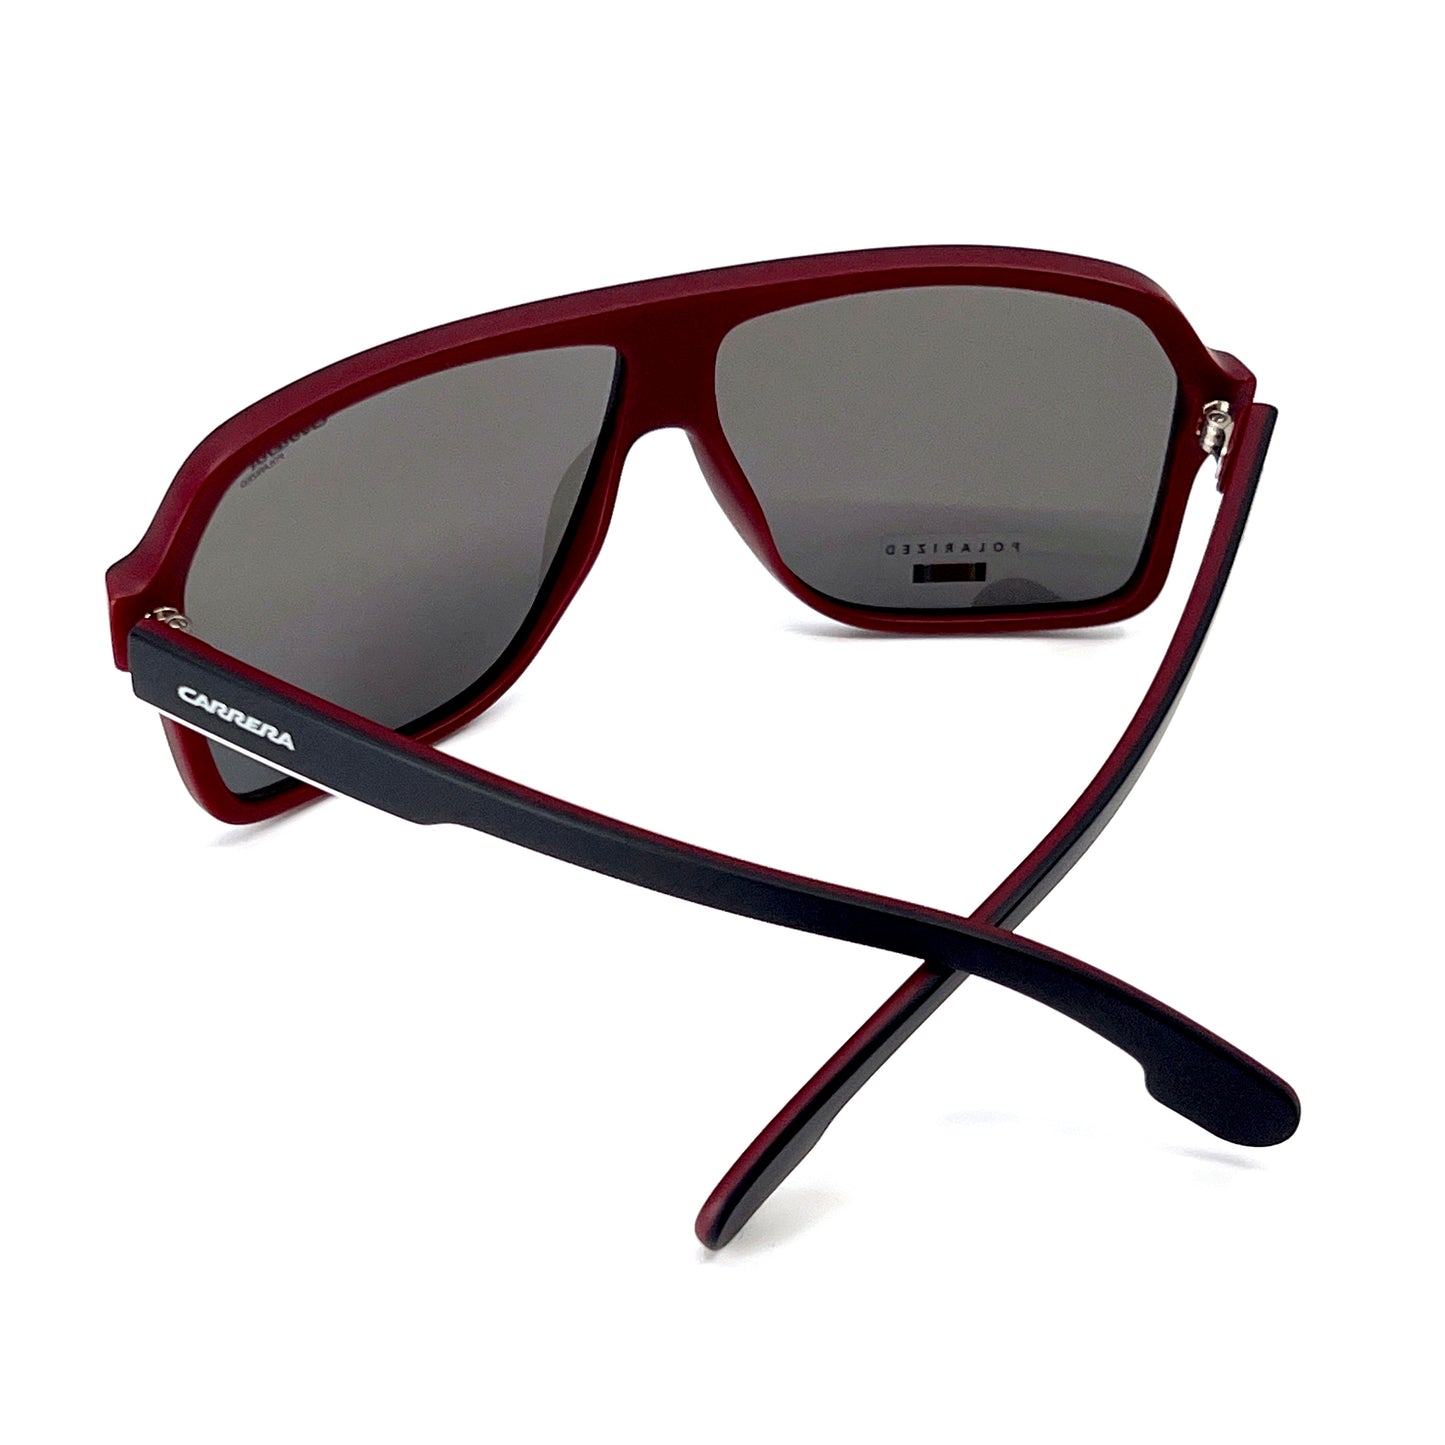 CARRERA Sunglasses 1001/S BLXM9